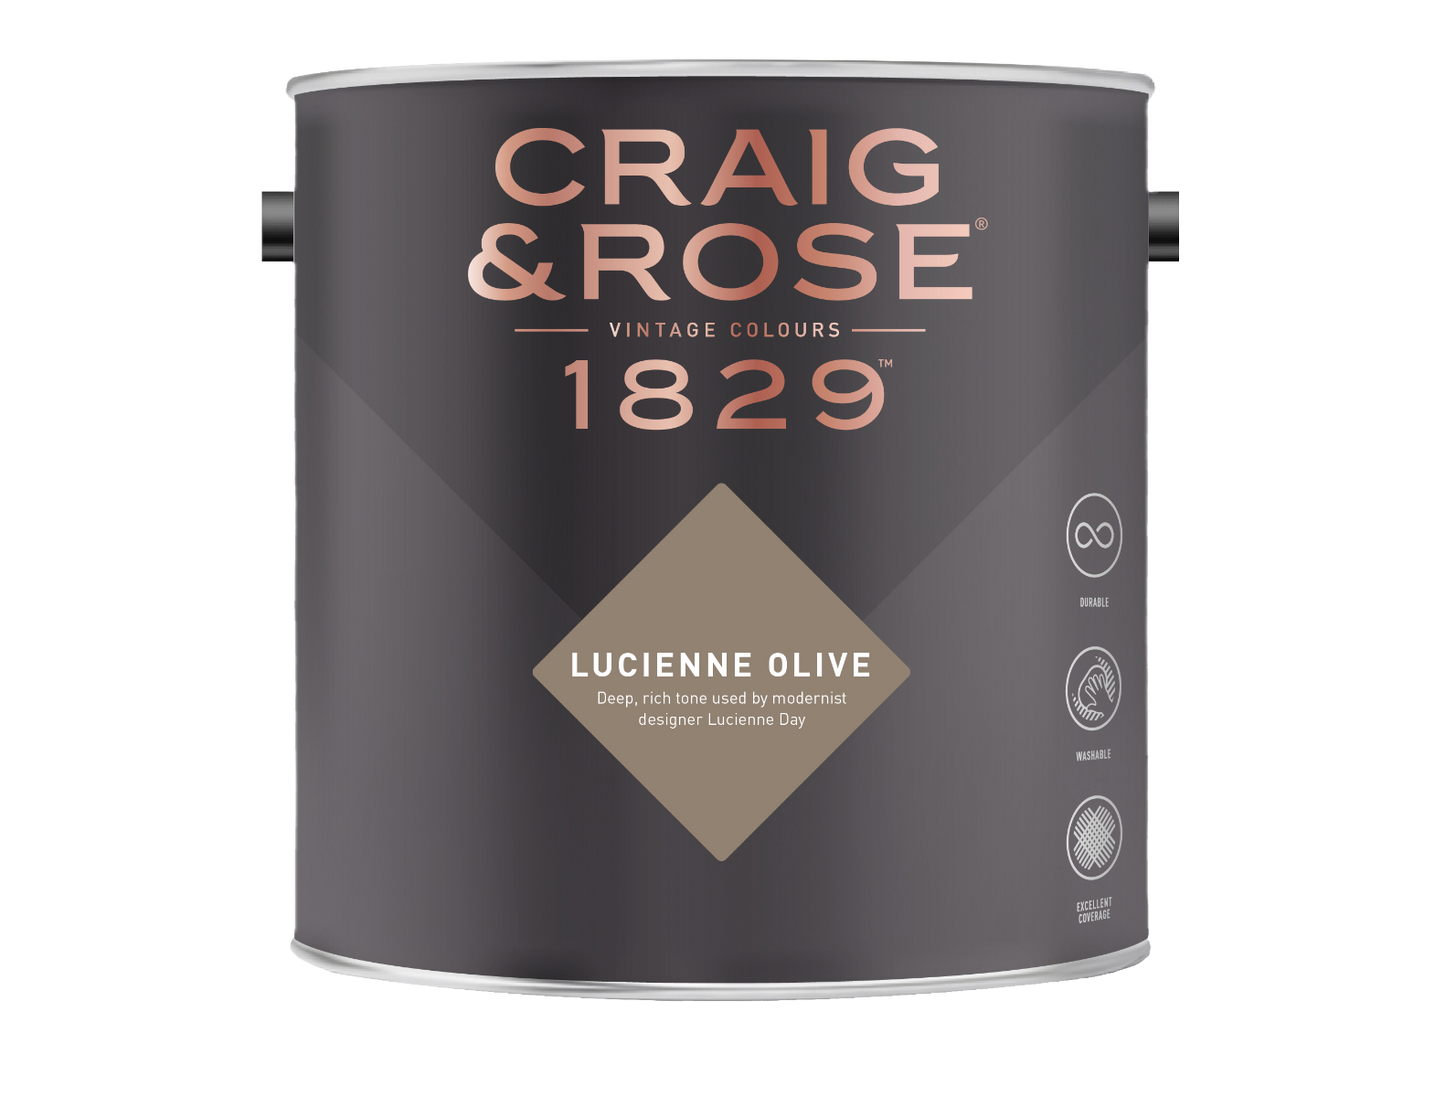 Craig & Rose 1829 Lucienne Olive